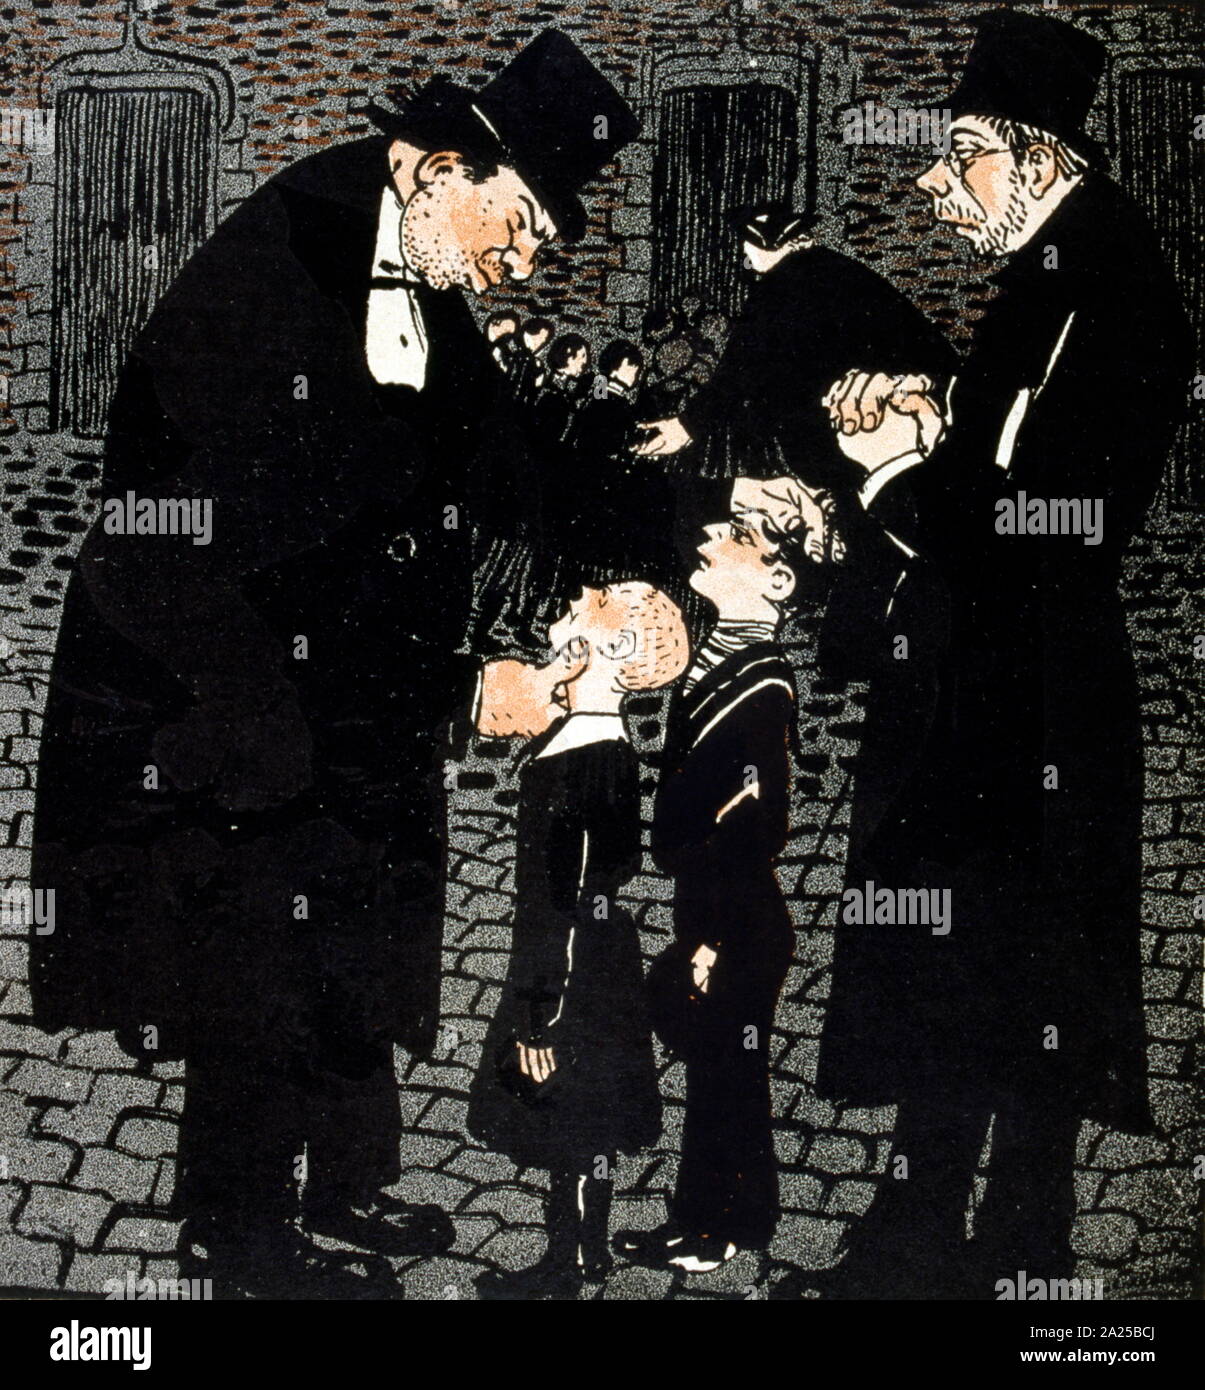 Illustration d'un magazine satirique français, montrant un établissement correctionnel pour les enfants tenu par un ordre religieux Banque D'Images